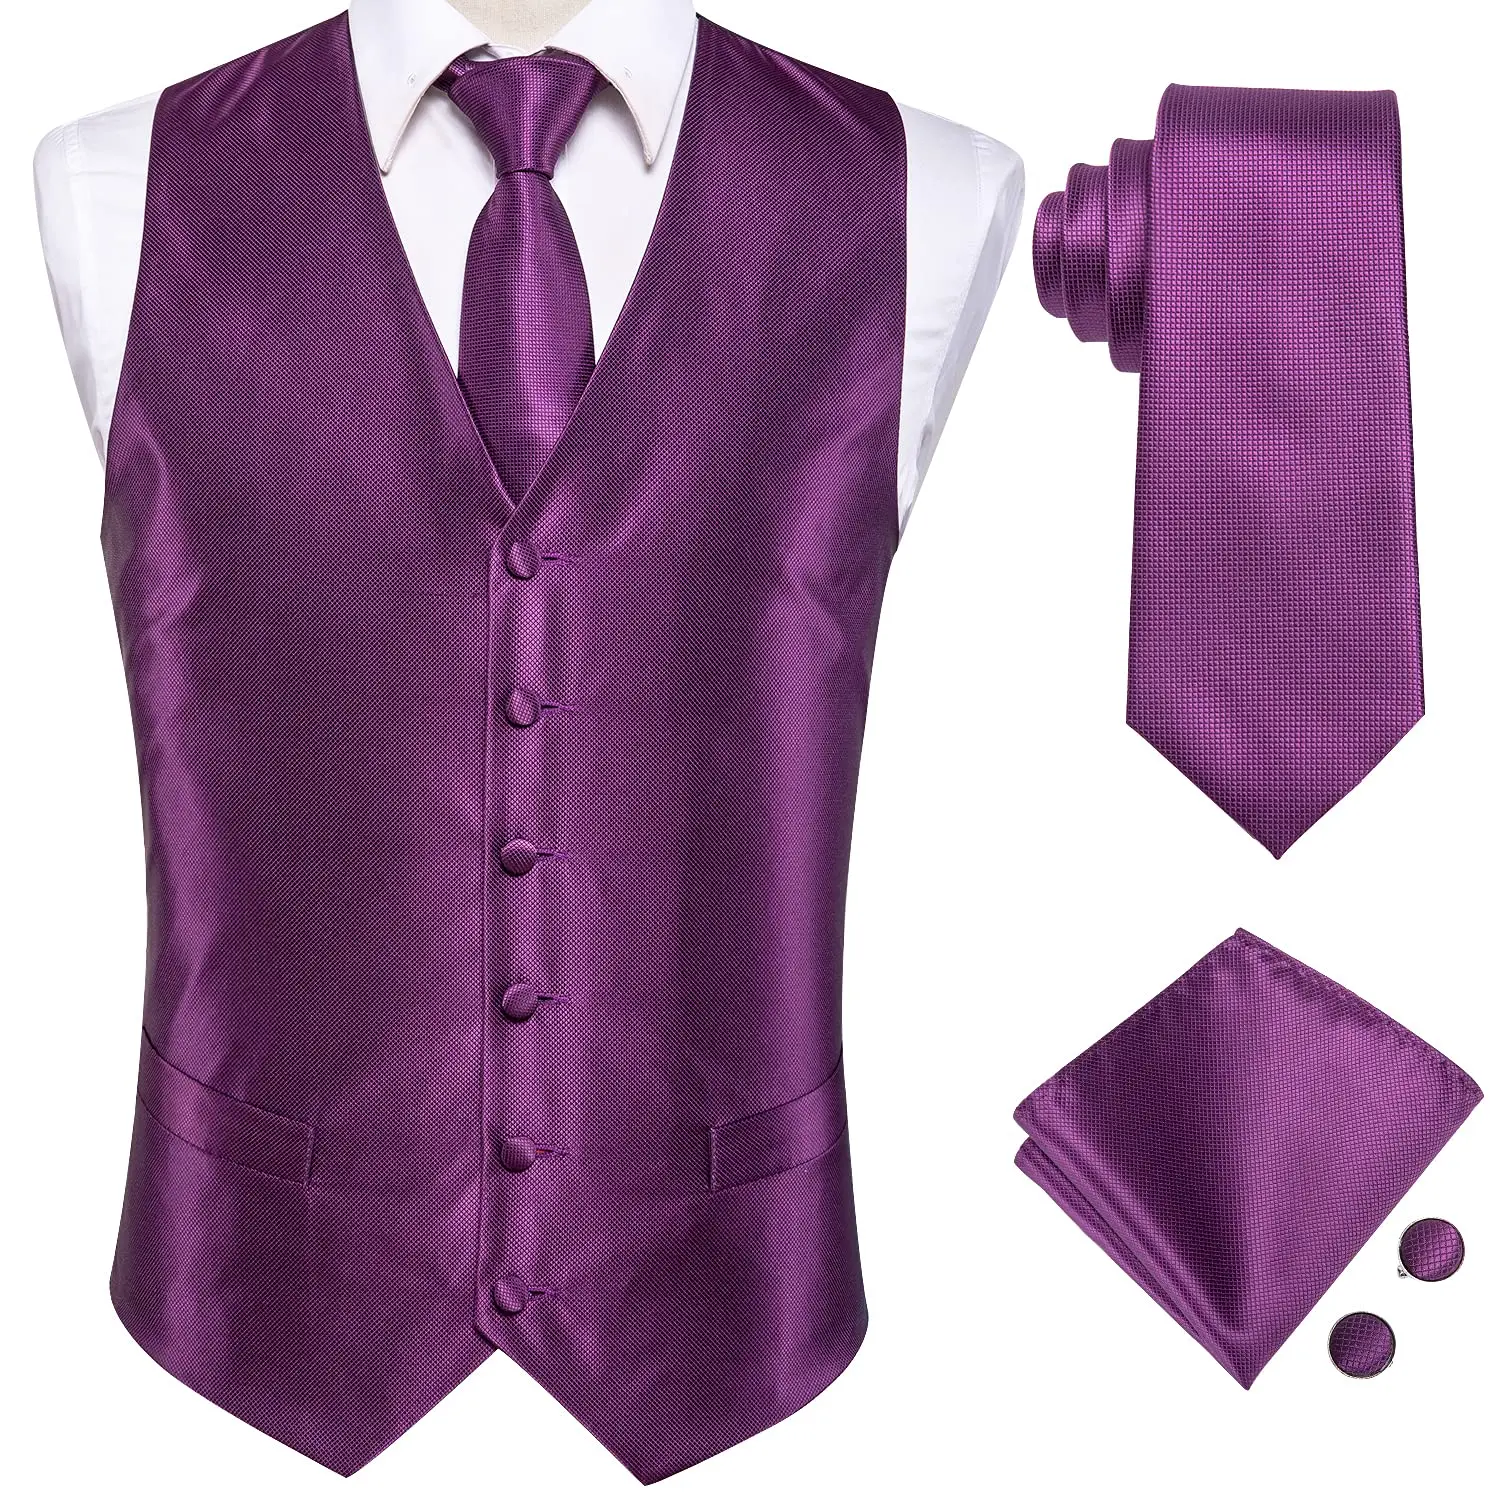 blazer suit Hi-Tie Jacquard Woven Silk Men Vest Purple Pink Red Blue Green Waistcoat Tie Hanky Cufflinks Set for Men Wedding Office Gift XXL coat suit for men Suits & Blazer